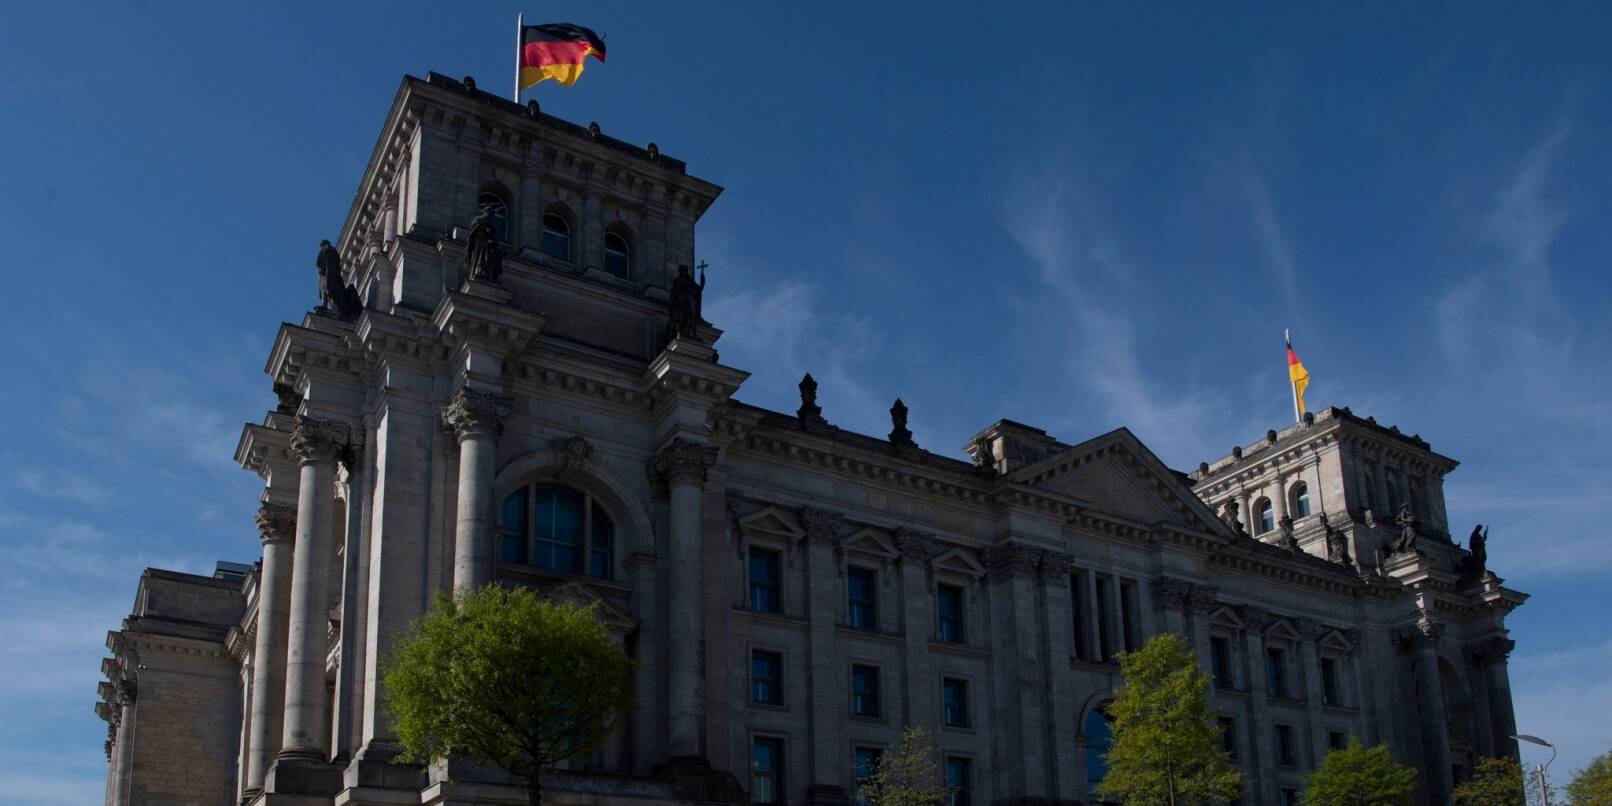 Der Sitz des Bundestages: Das Reichstagsgebäude in Berlin.